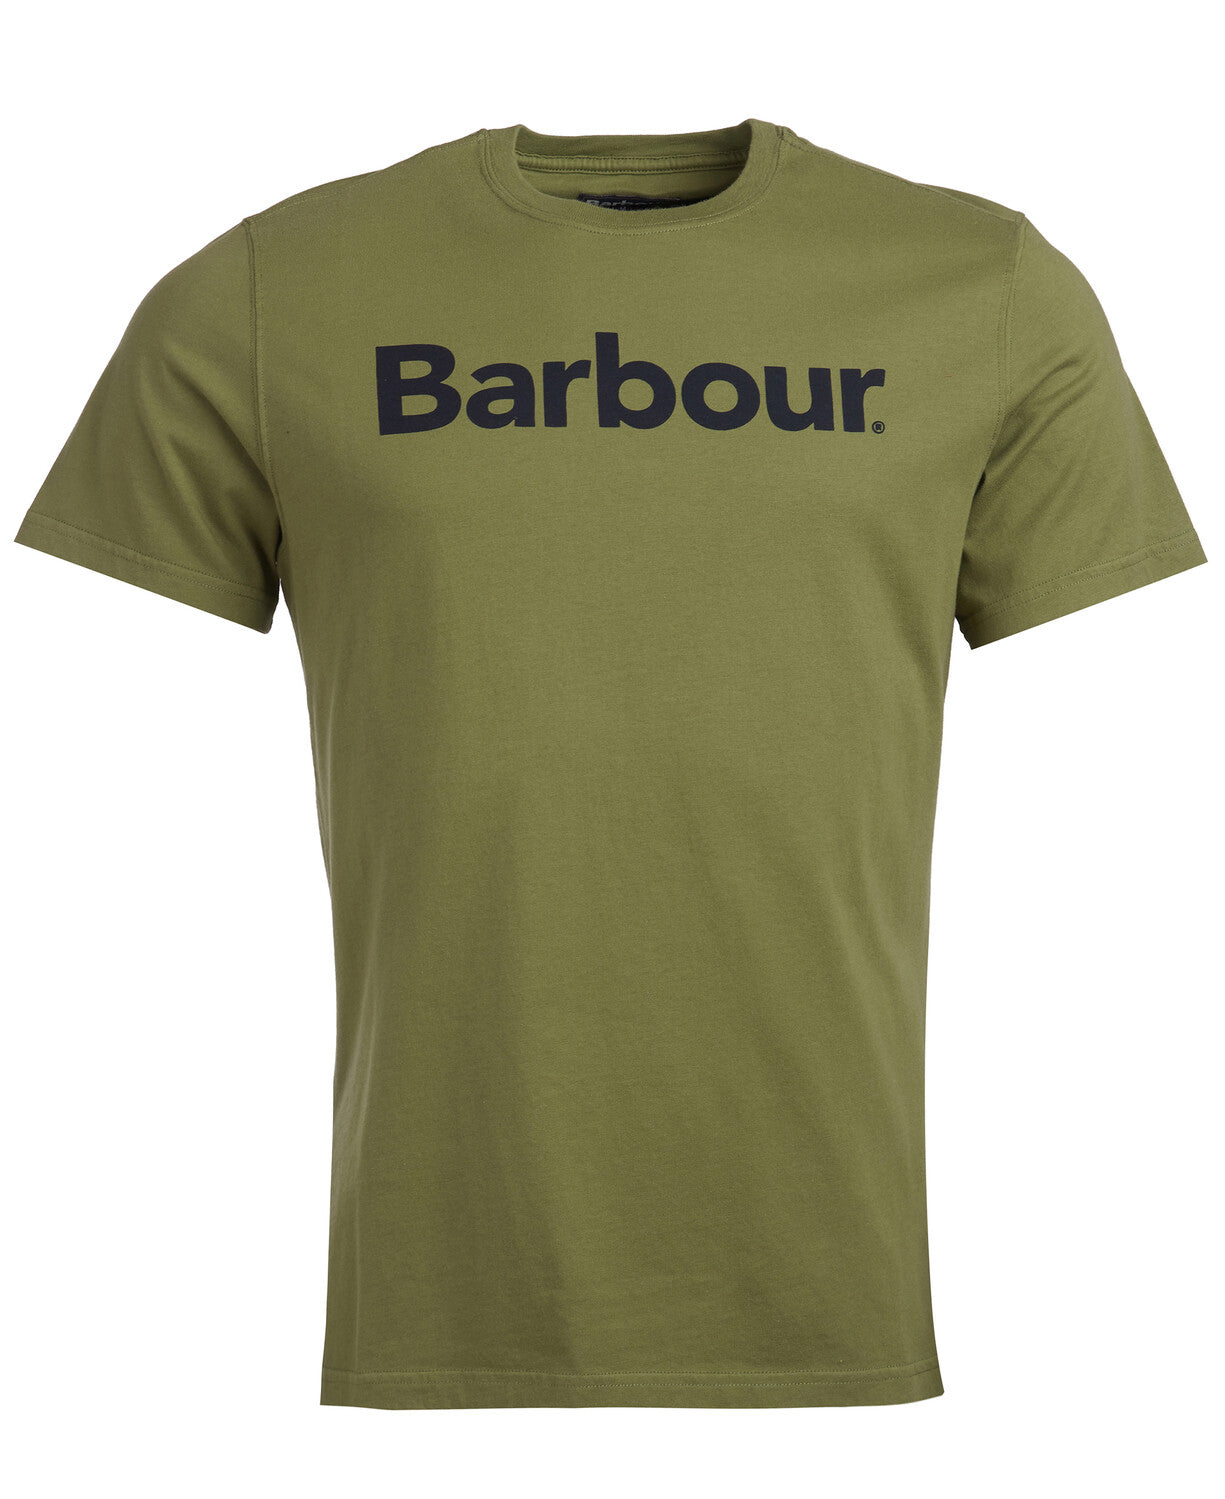 Barbour Logo Olive T-Shirt